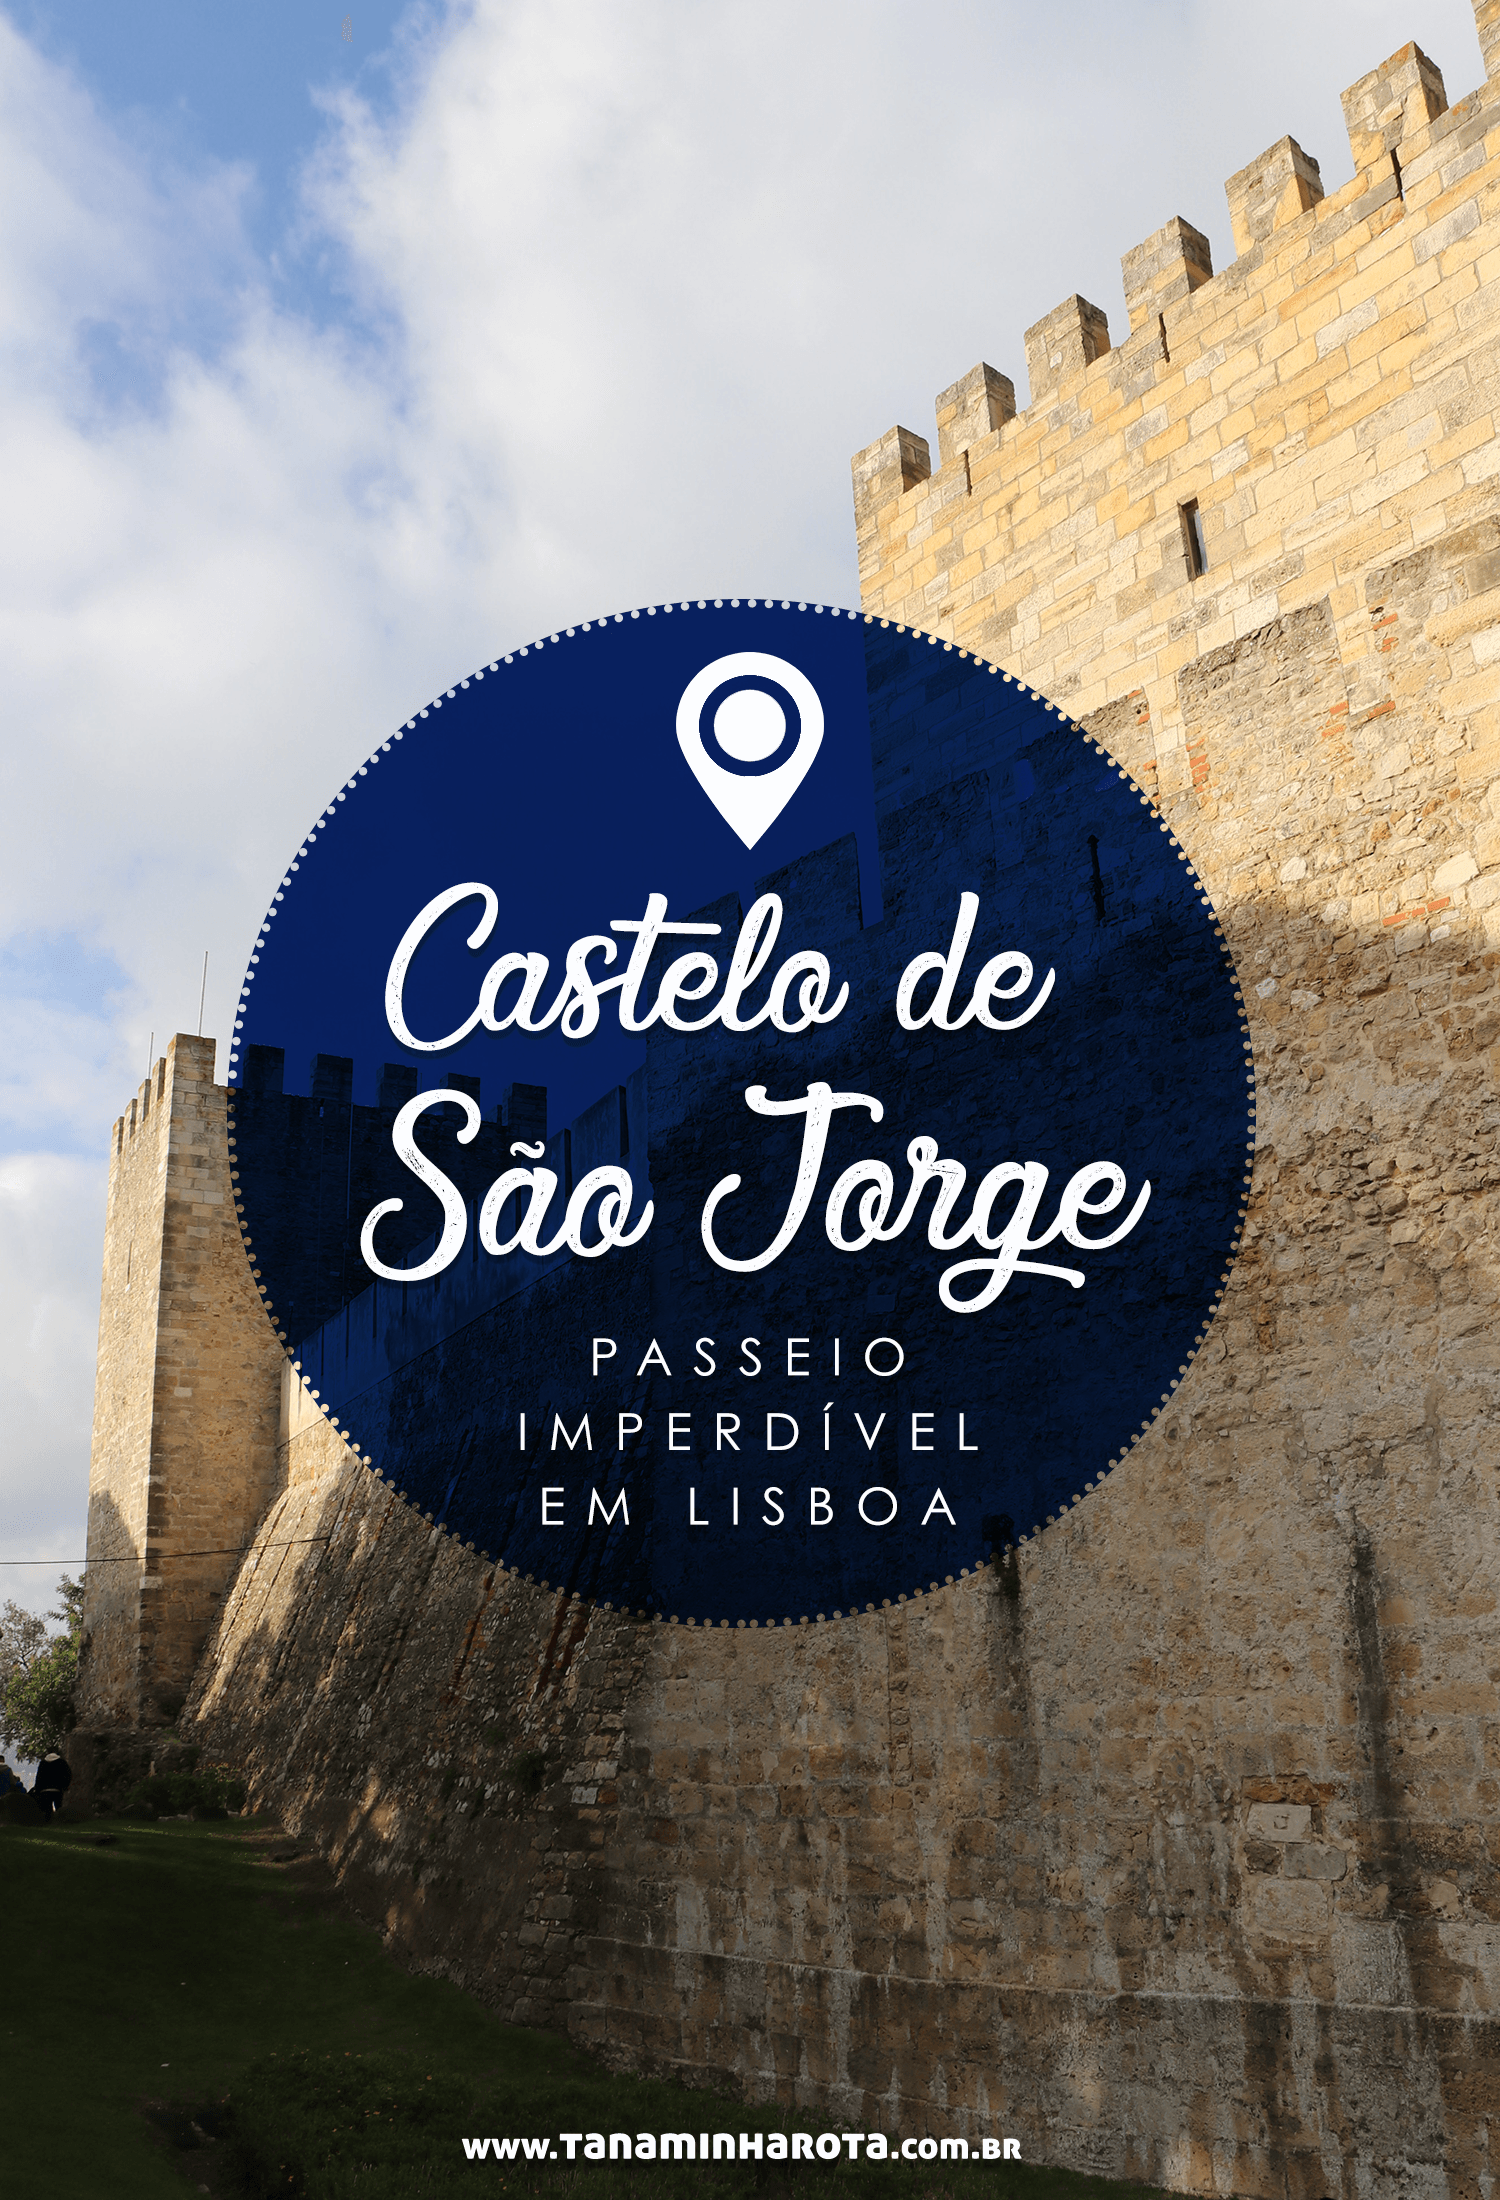 Planejando uma viagem para Lisboa? Então você precisa conhecer o Castelo de São Jorge, um dos pontos turísticos mais legais da cidade! Leia esse post e veja dicas de como comprar ingresso, curiosidades e mais! #portugal #lisboa #europa #viagem